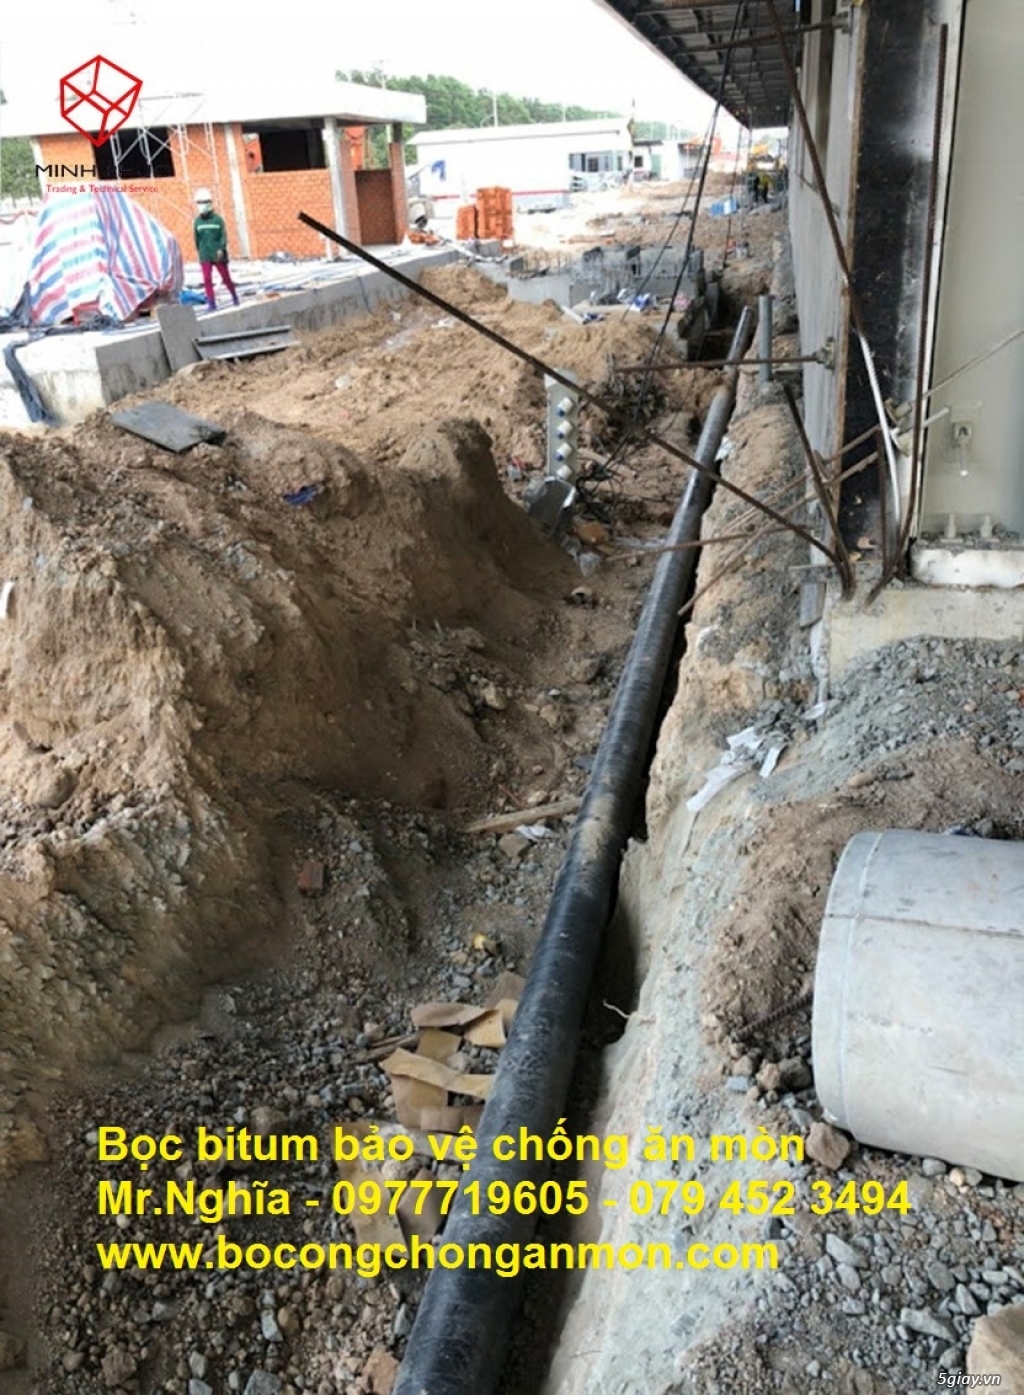 Băng keo bitum premcote  bảo vệ chống ăn mòn ống kim loại chôn ngầm. - 1